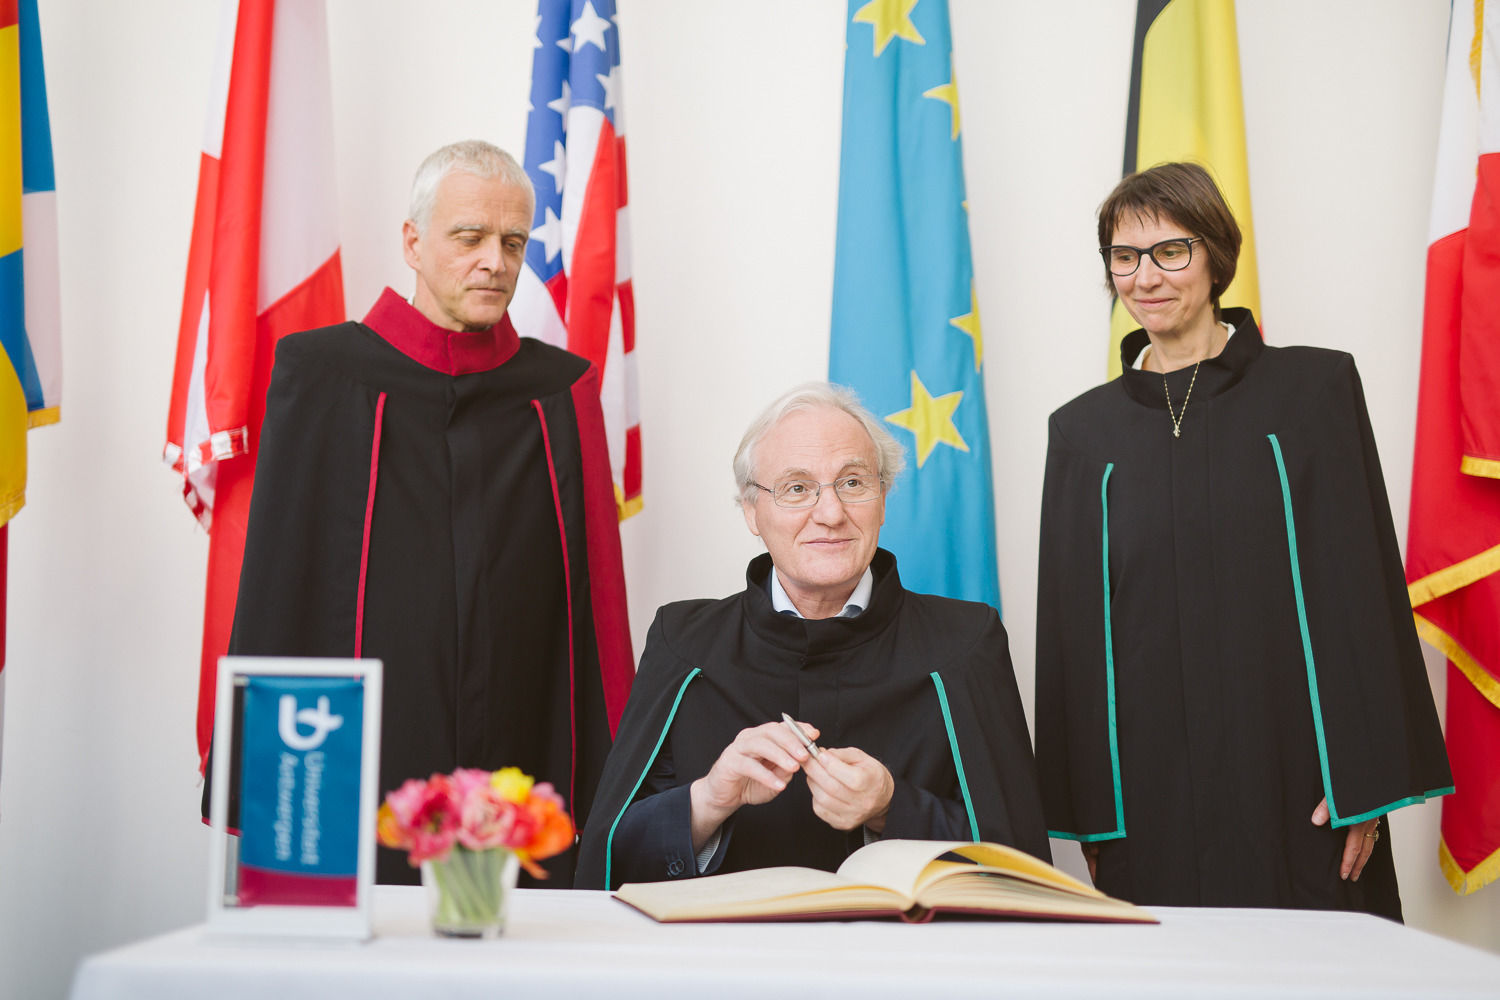 Ernst Fehr receiving honourary doctorate at University of Antwerp